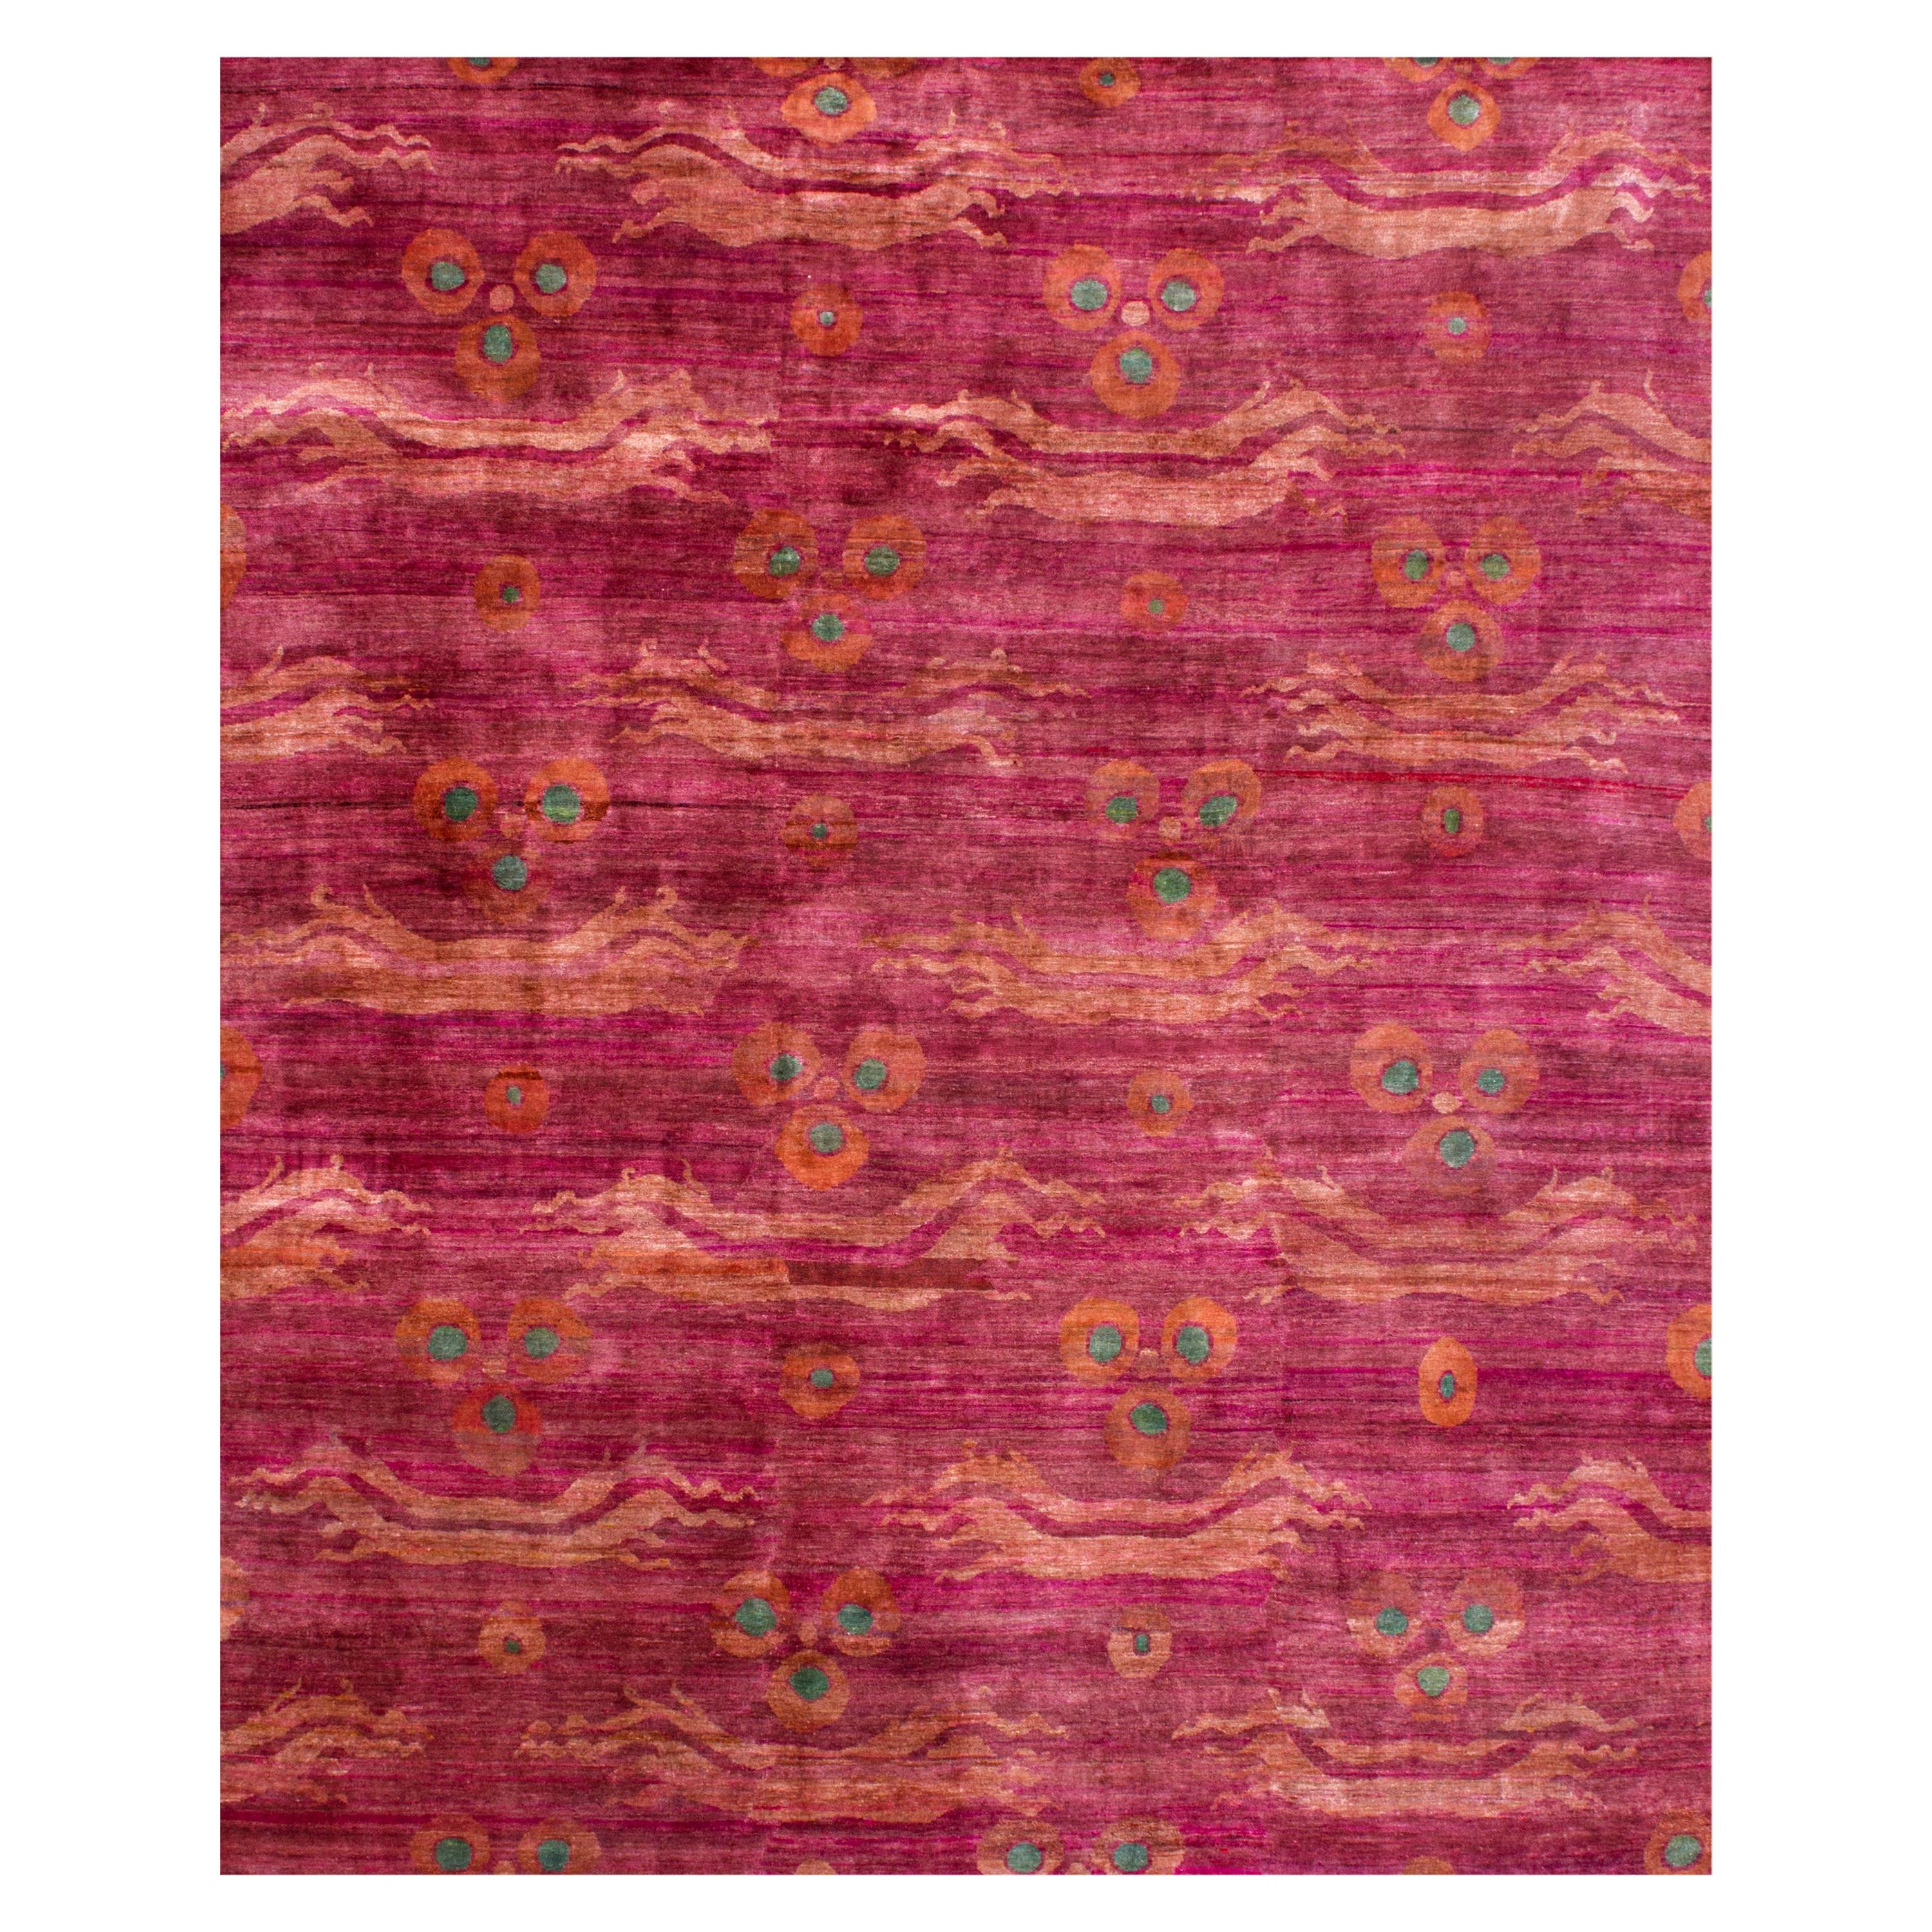 Zeitgenössischer handgeknüpfter Teppich aus natürlicher Seide in Rosa und Fuchsia mit chinesischem Drachenmuster